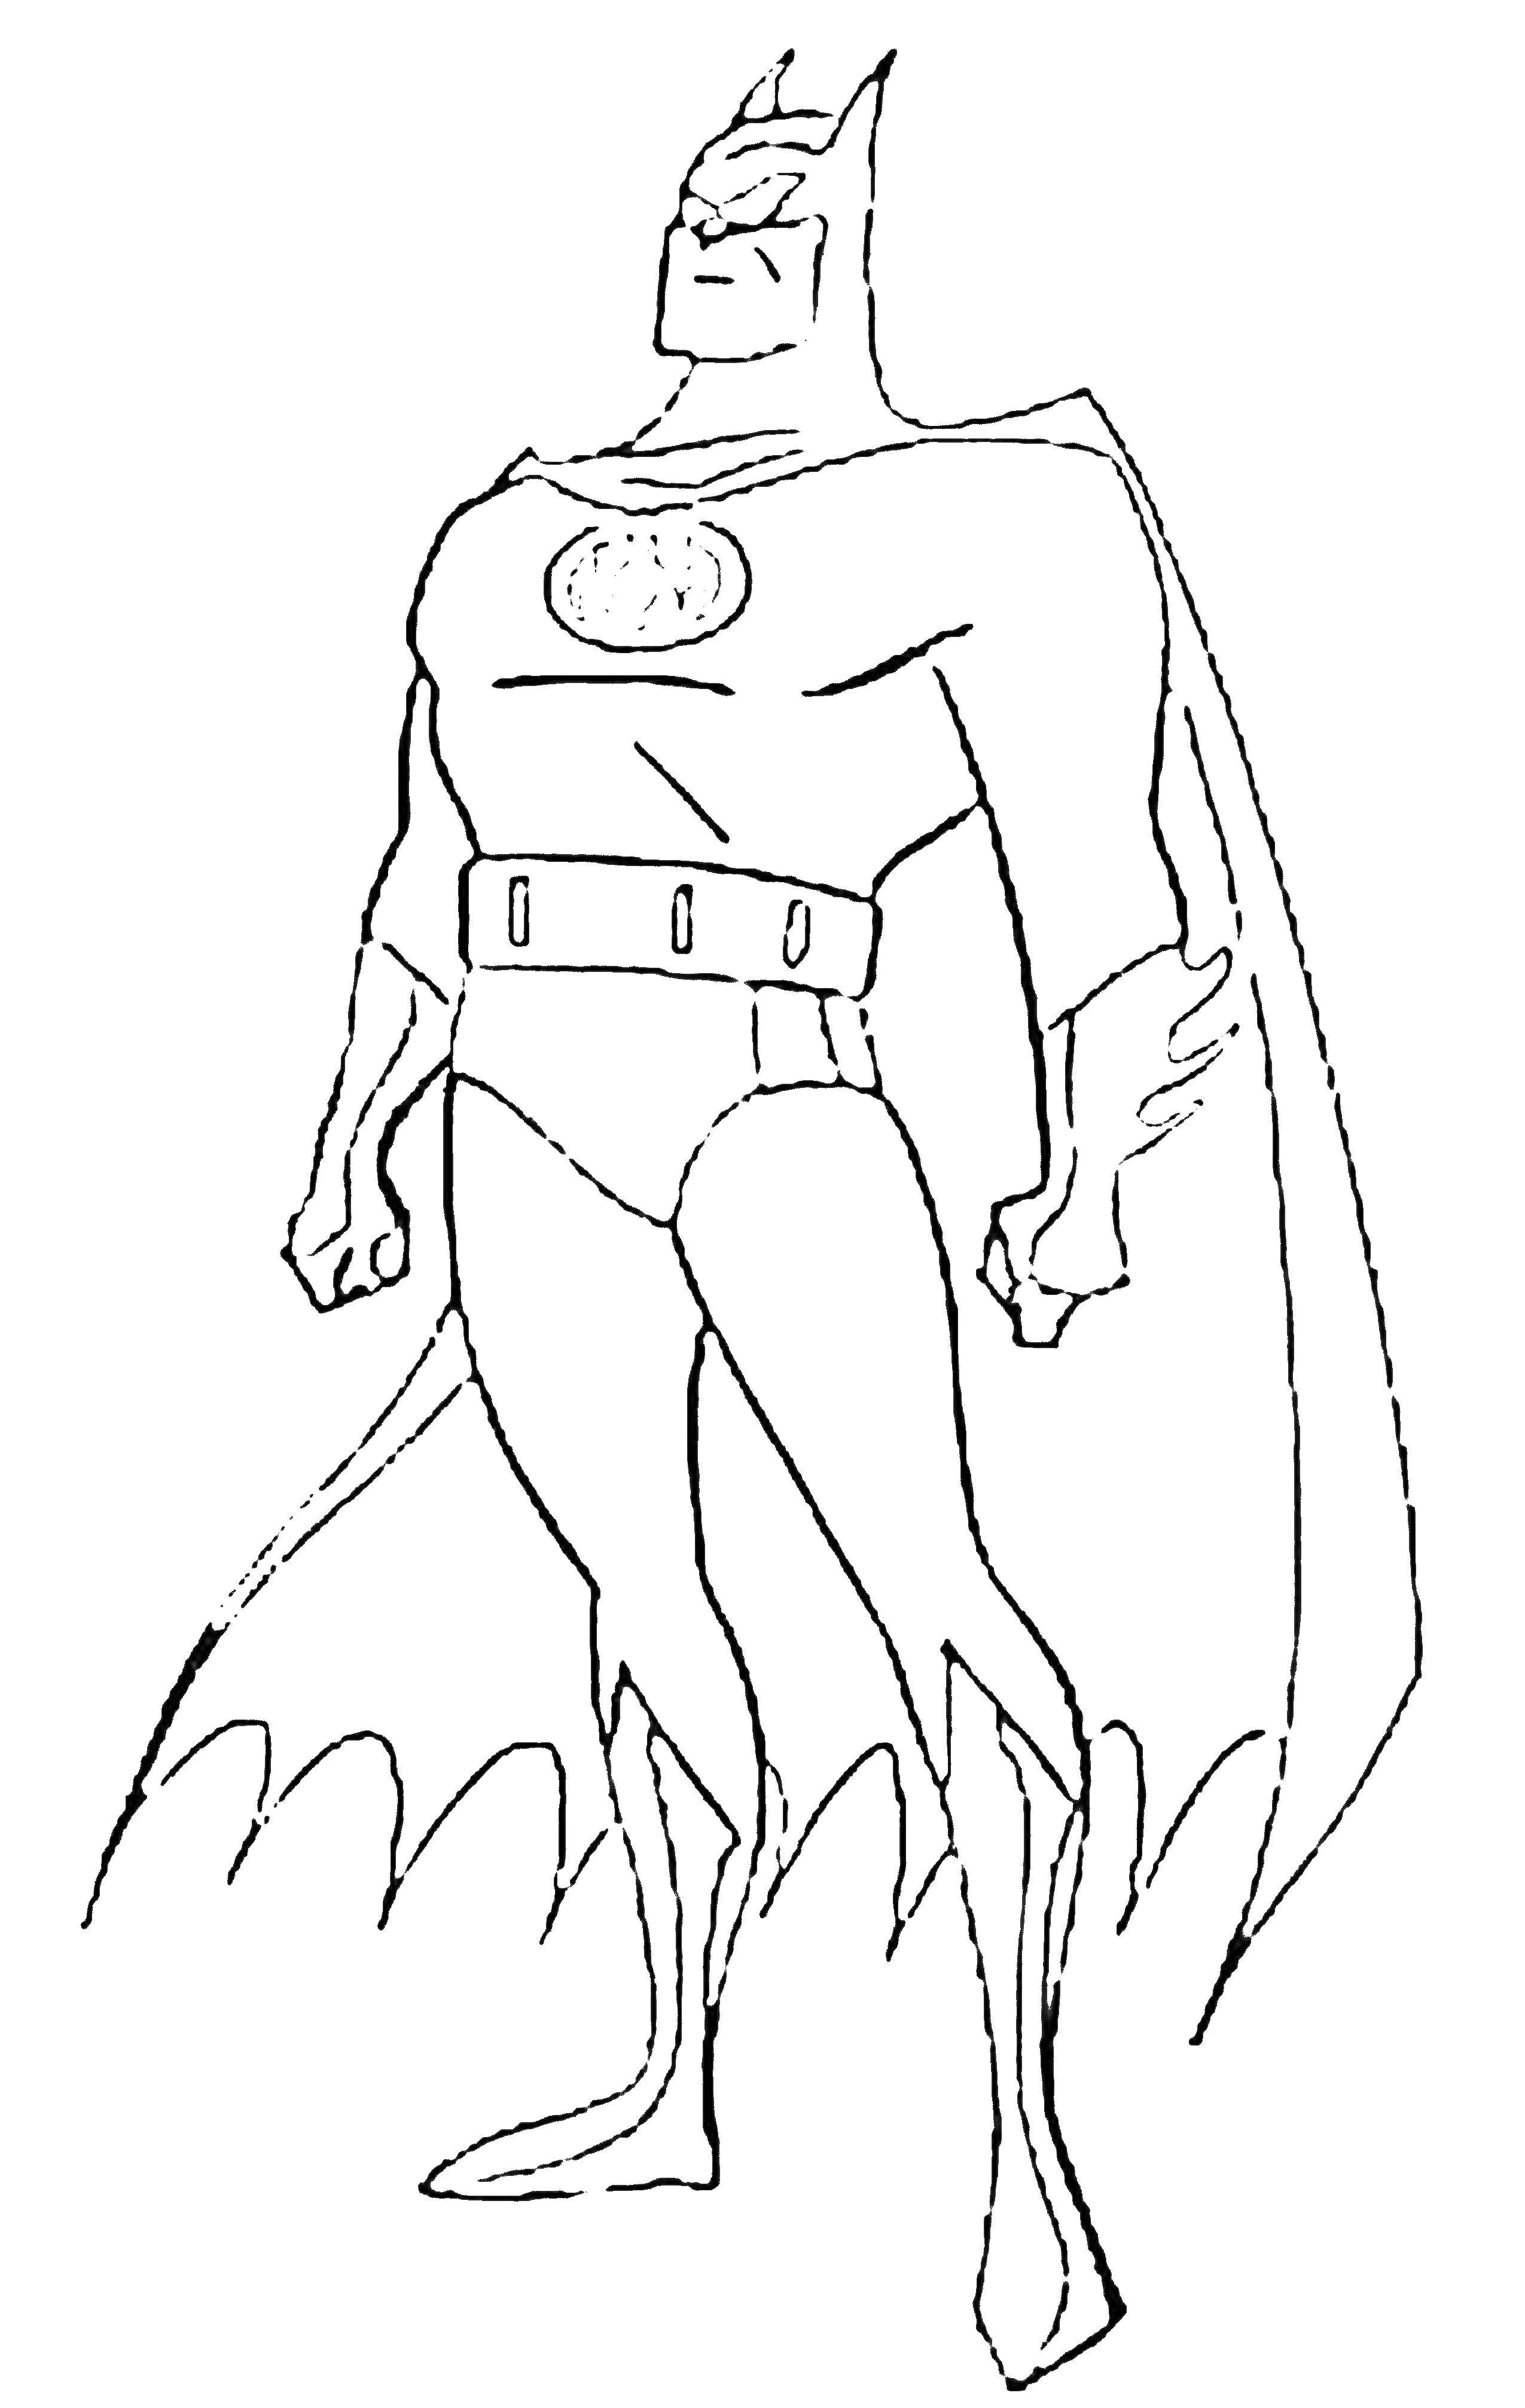 Название: Раскраска Бэтмен. Категория: супергерои. Теги: Бэтмен, супергерои.